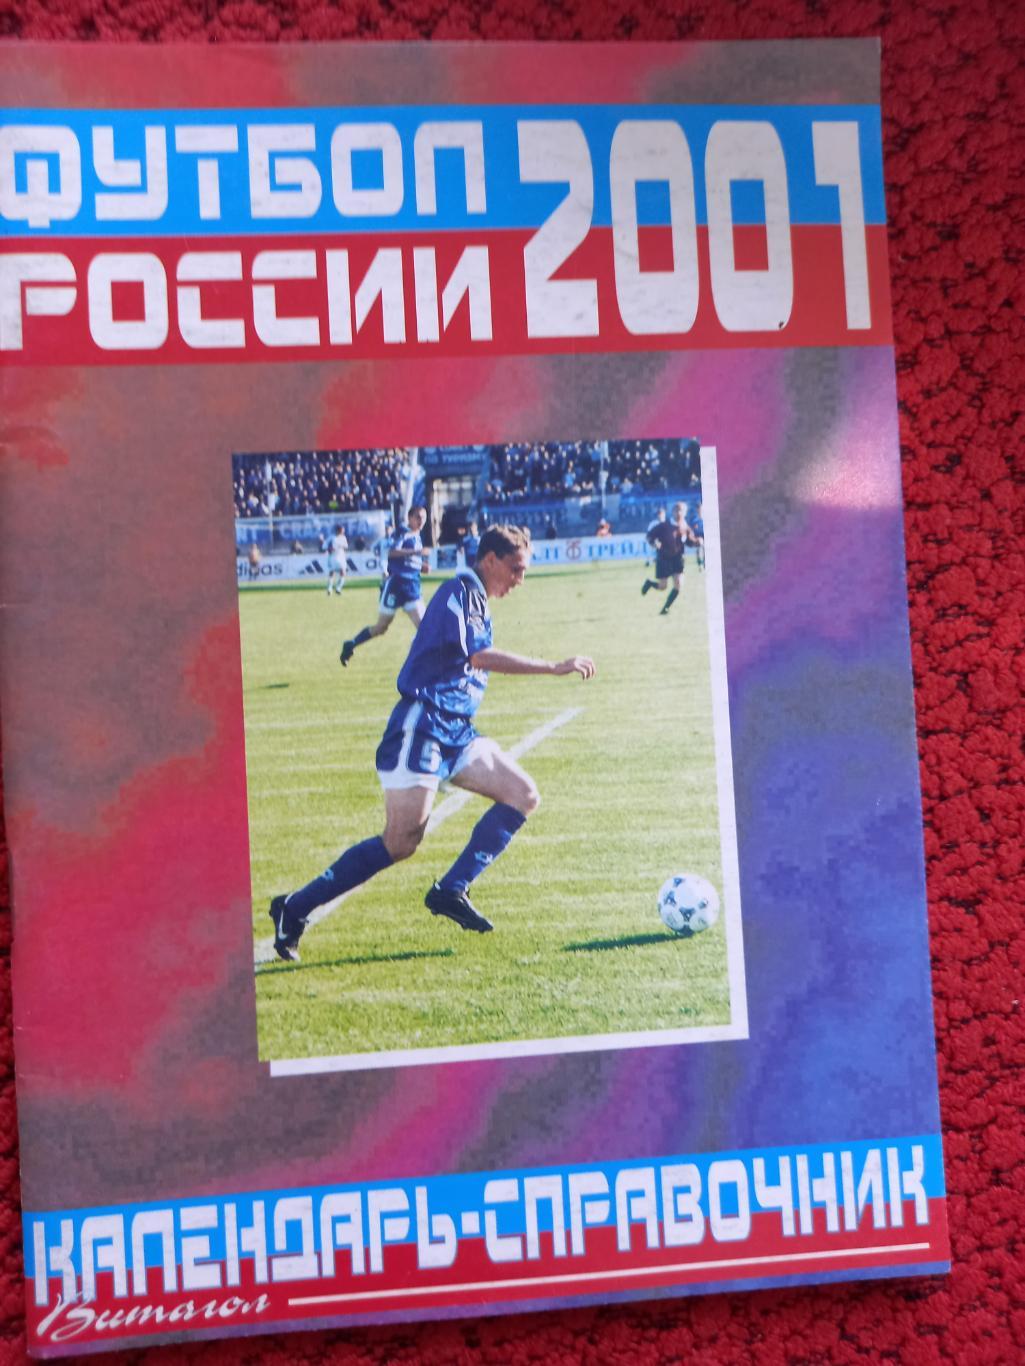 Календарь - справочник Футбол России 2001г. С.Петербург изд. Витагол